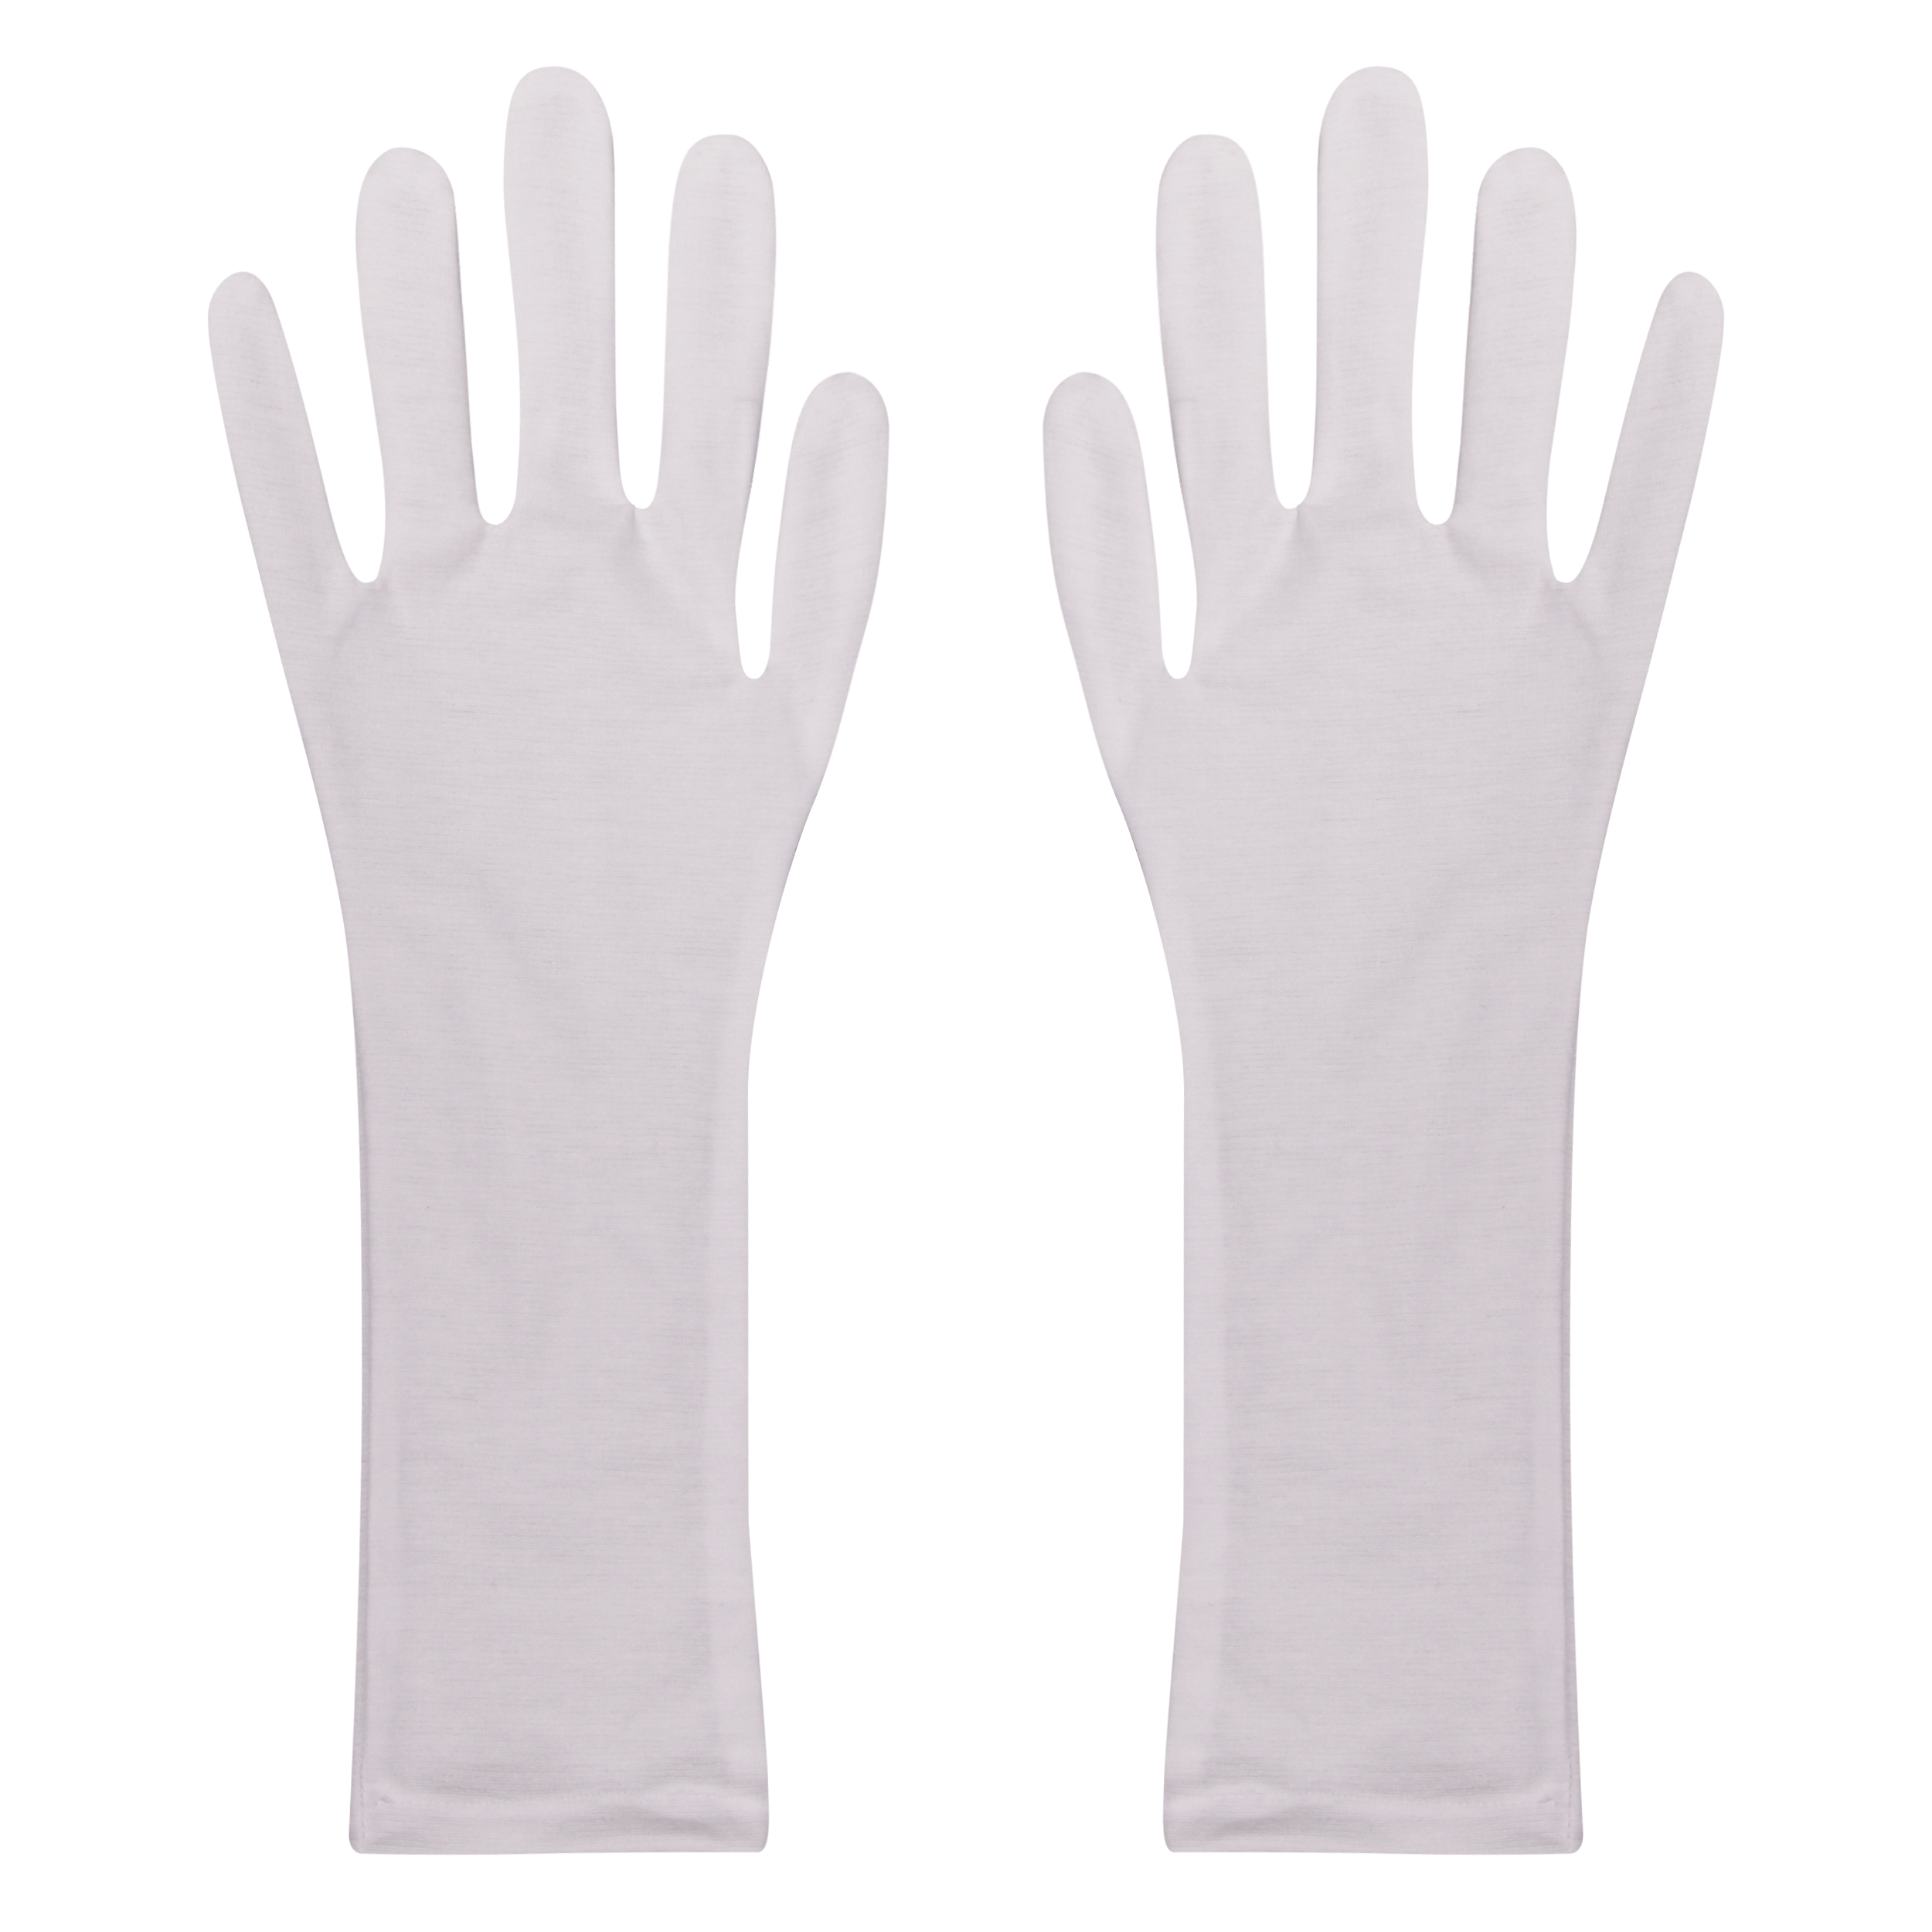 دستکش زنانه ضیاکو ترنج مدل 3668-3 رنگ سفید